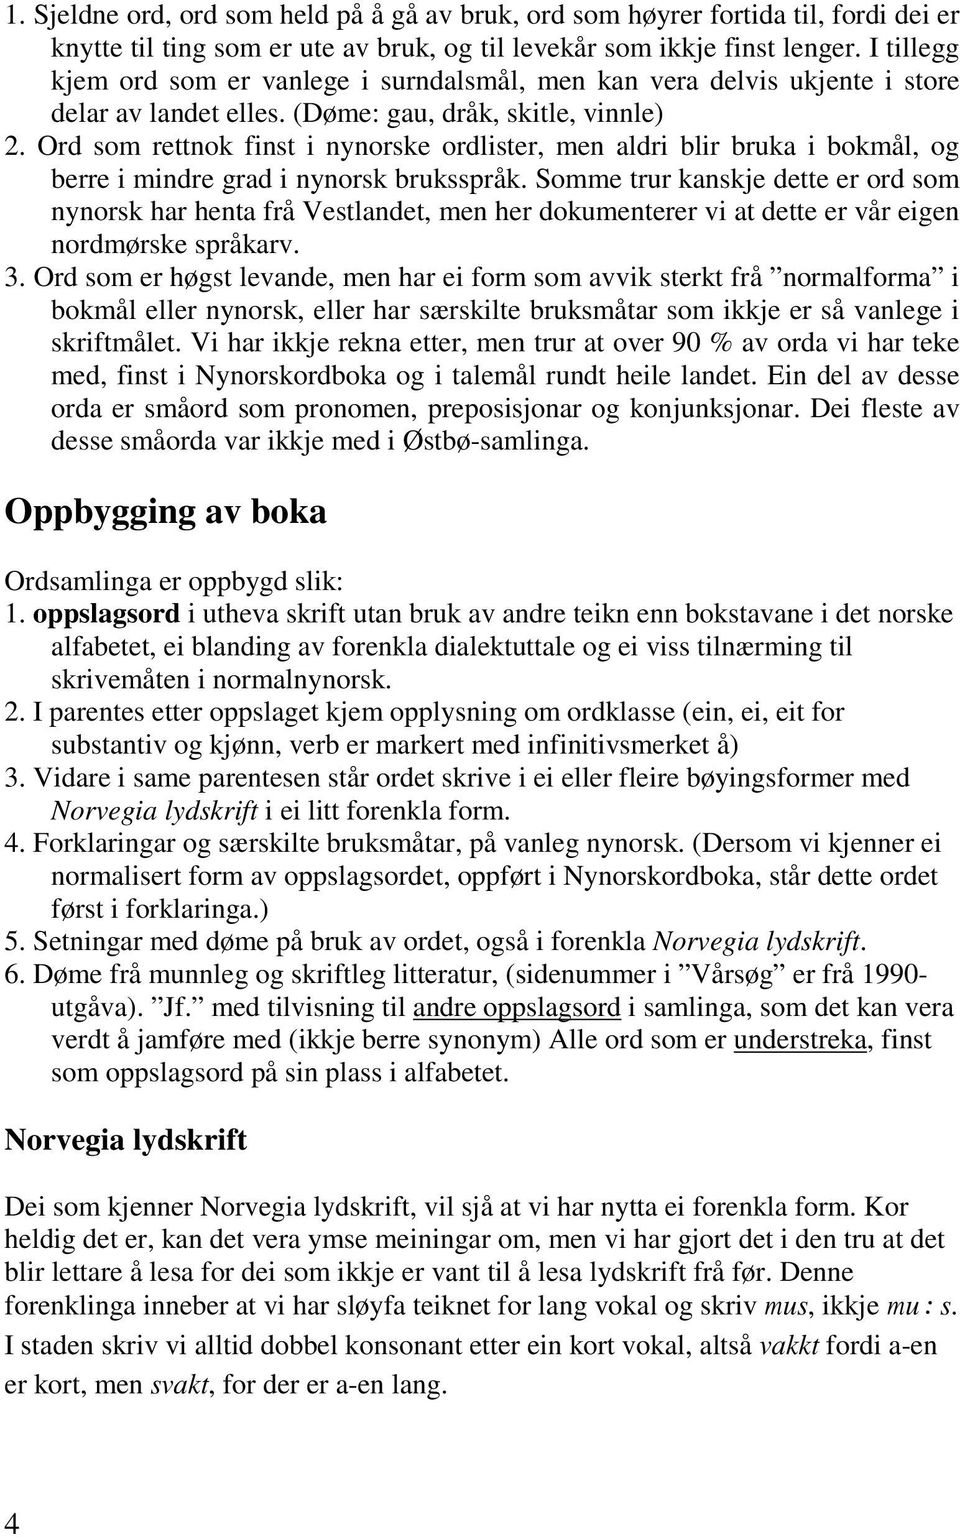 Ord som rettnok finst i nynorske ordlister, men aldri blir bruka i bokmål, og berre i mindre grad i nynorsk bruksspråk.